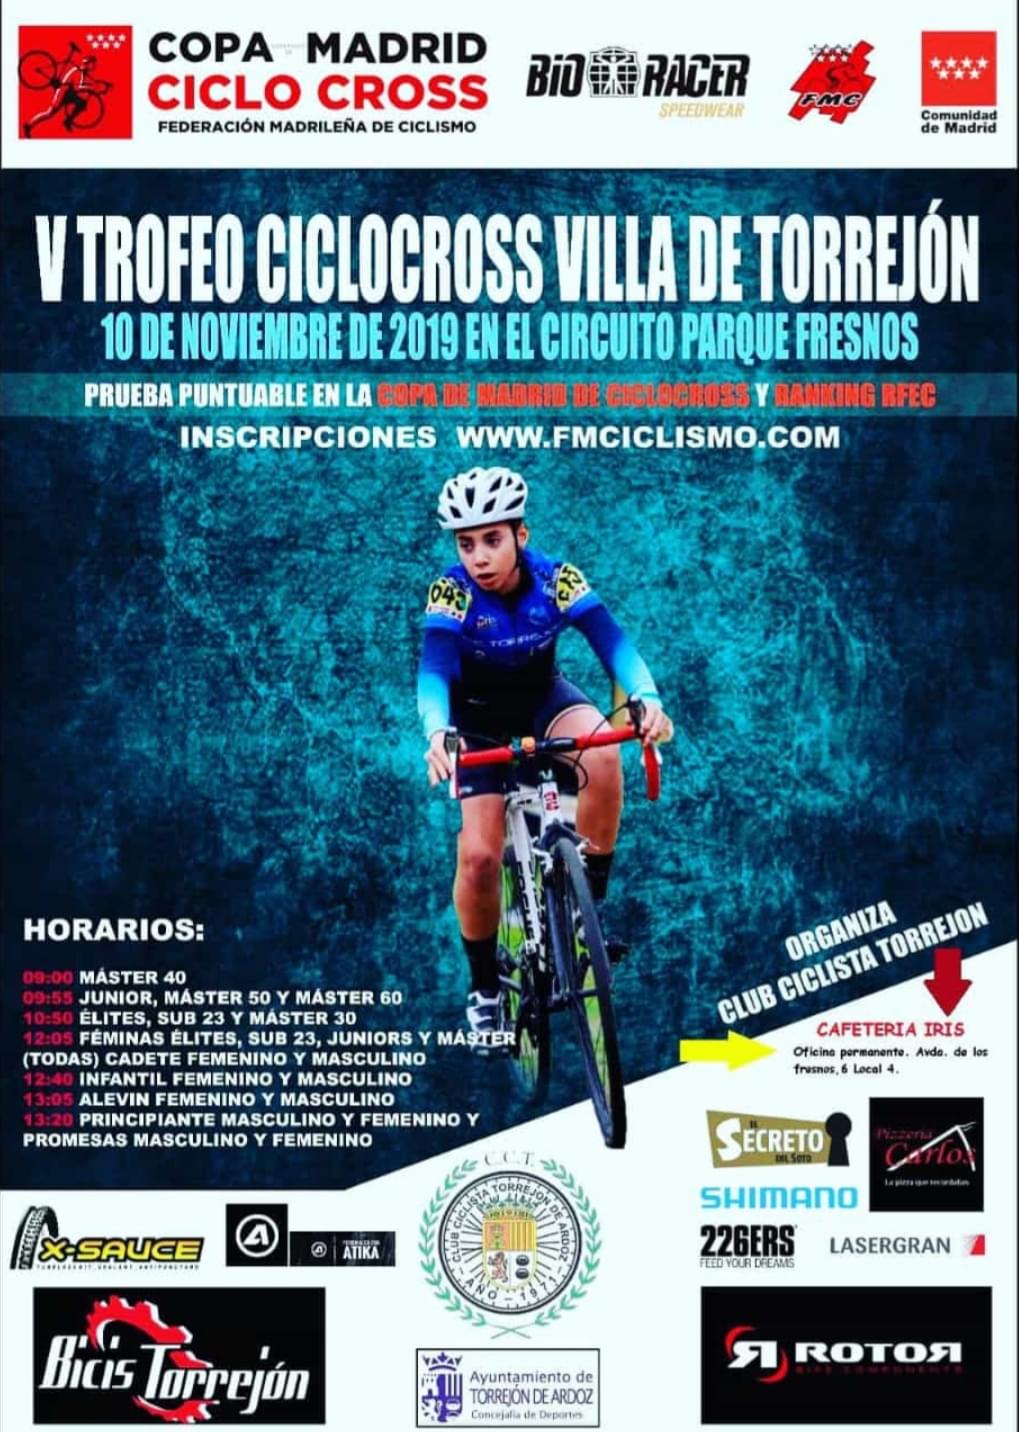 La Copa Comunidad de Ciclocross Bioracer desembarca en Torrejón de Ardoz el 10 de Noviembre